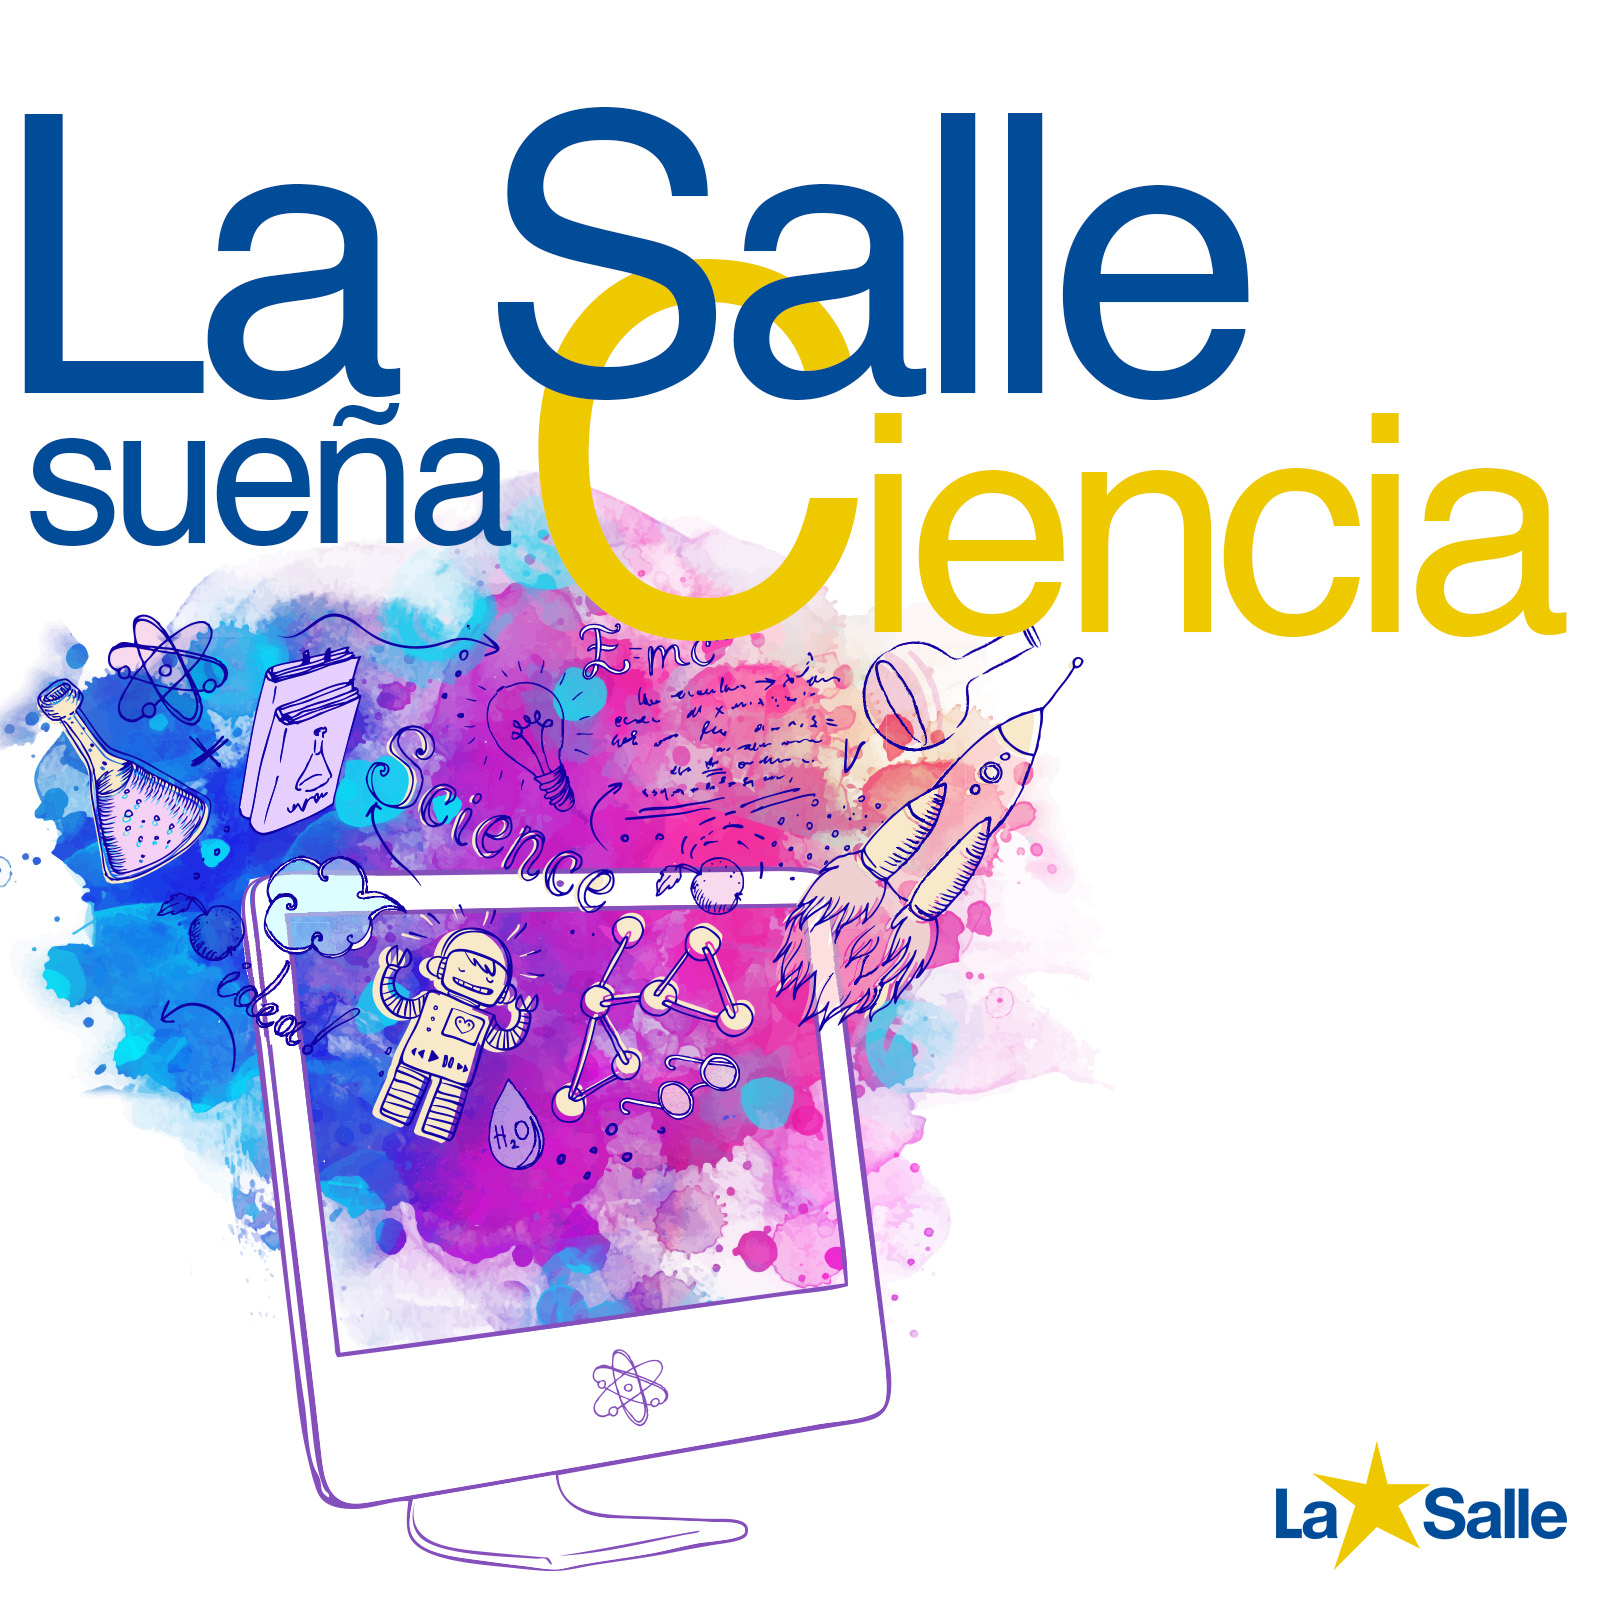 Los colegios La Salle de la Comunidad Valenciana, Islas Baleares y Teruel celebran el día de La Salle sueña Ciencia